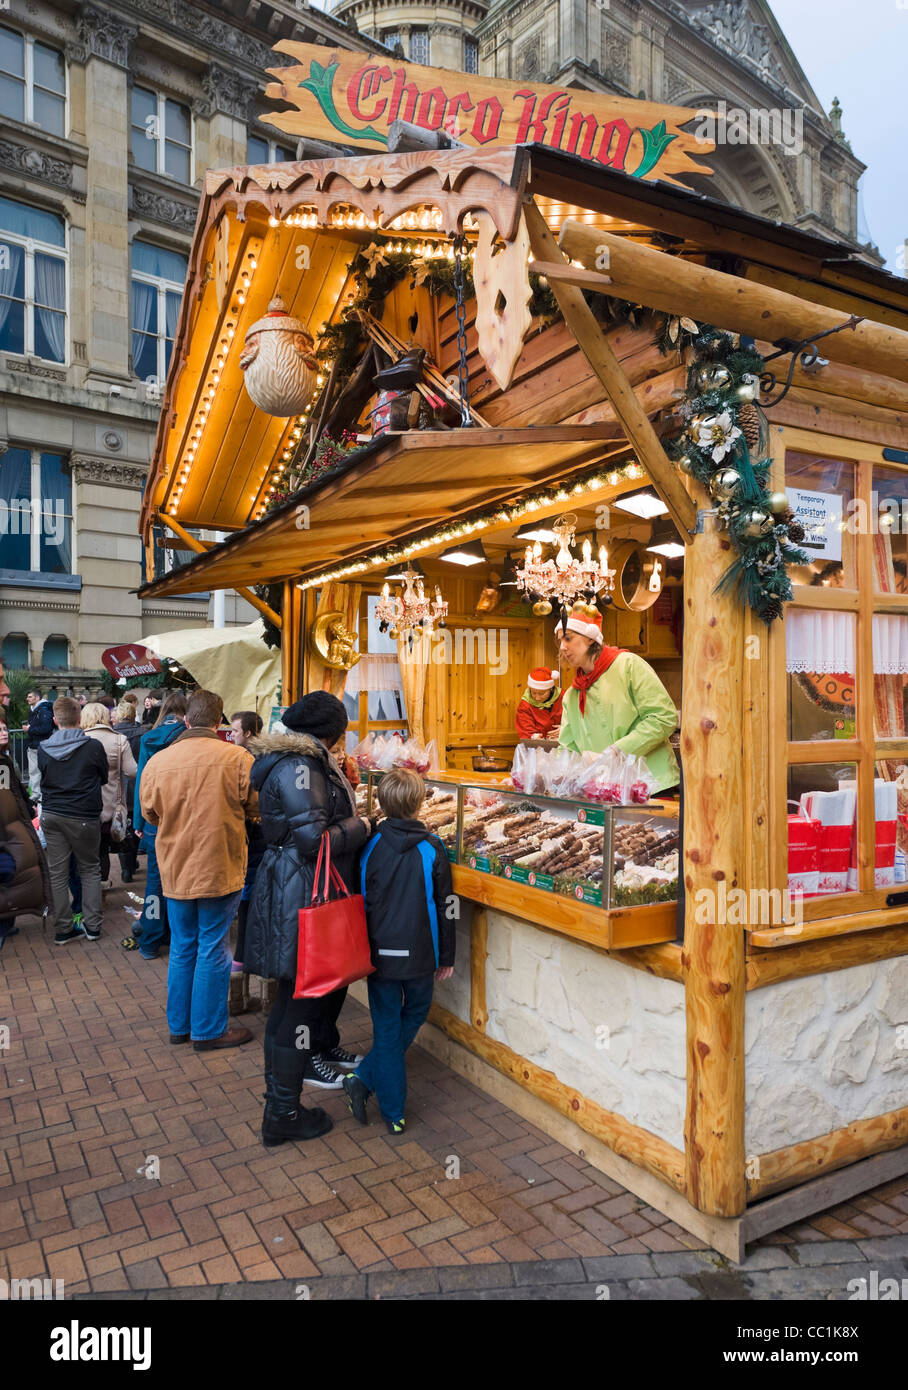 La famiglia di fronte a una bancarella vendendo cioccolata al Tedesco Francoforte Mercatino di Natale, Victoria Square, Birmingham, Regno Unito Foto Stock